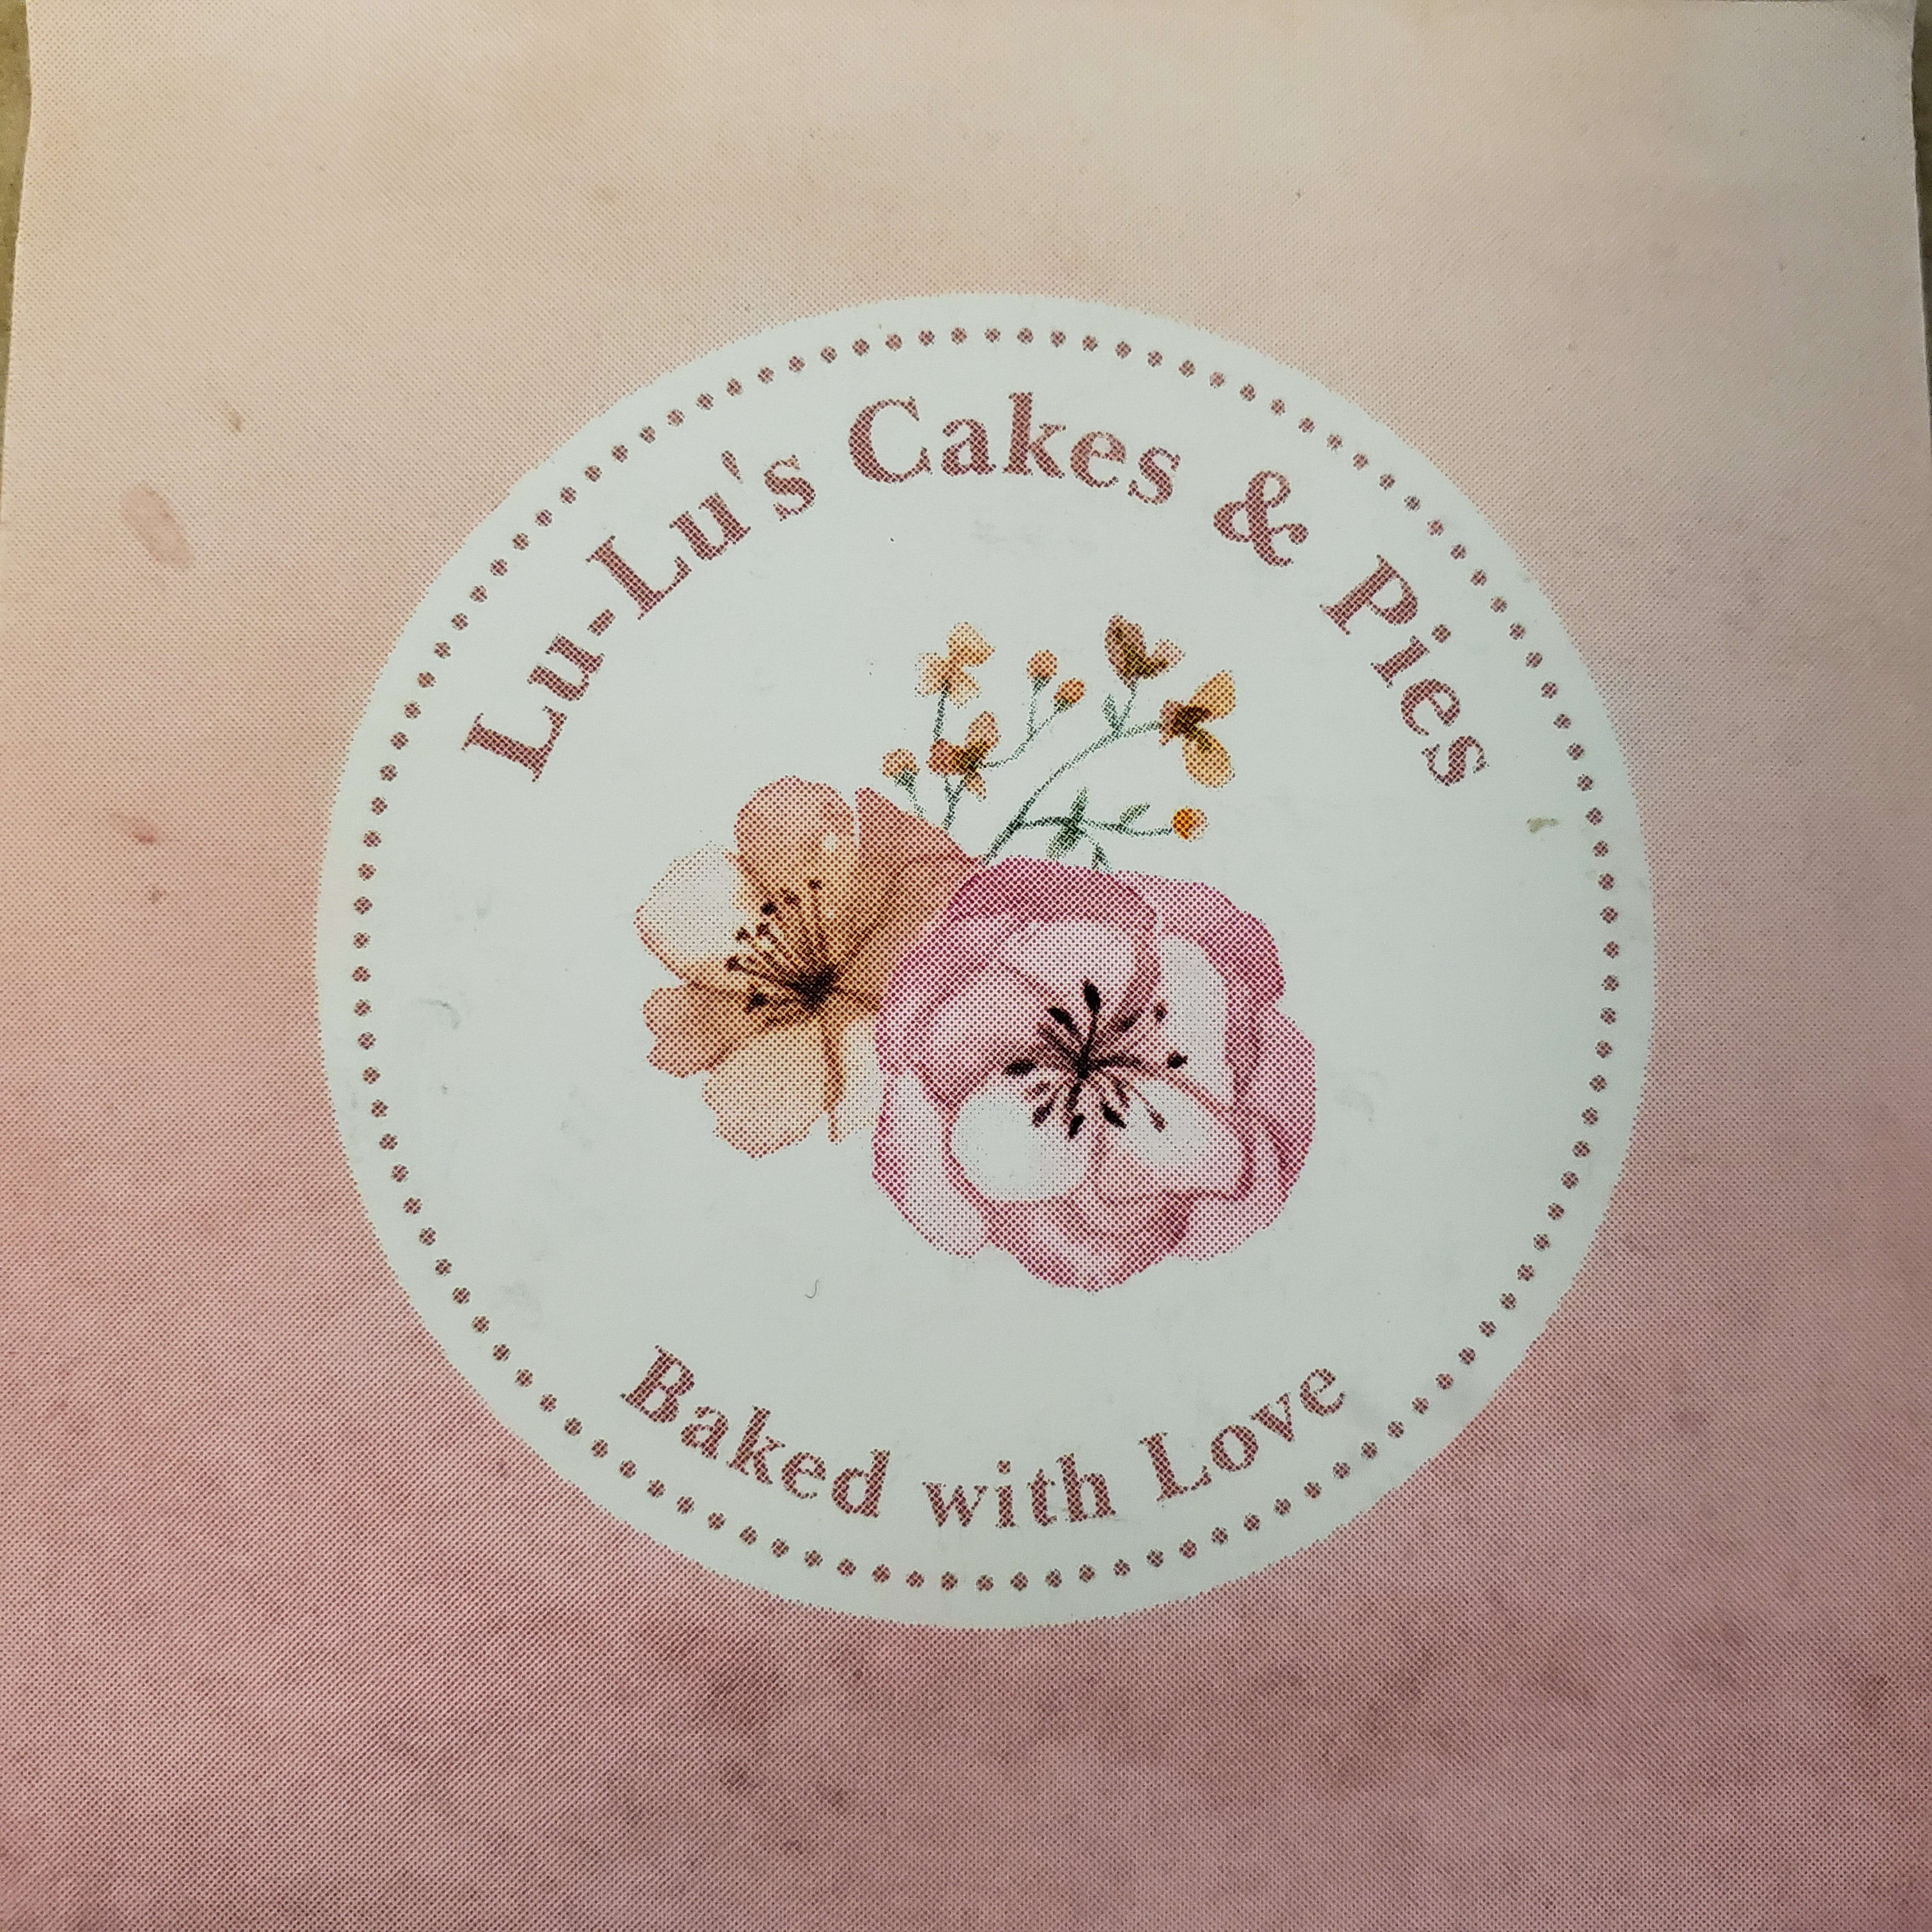 Lu-Lu's Cakes & Pies